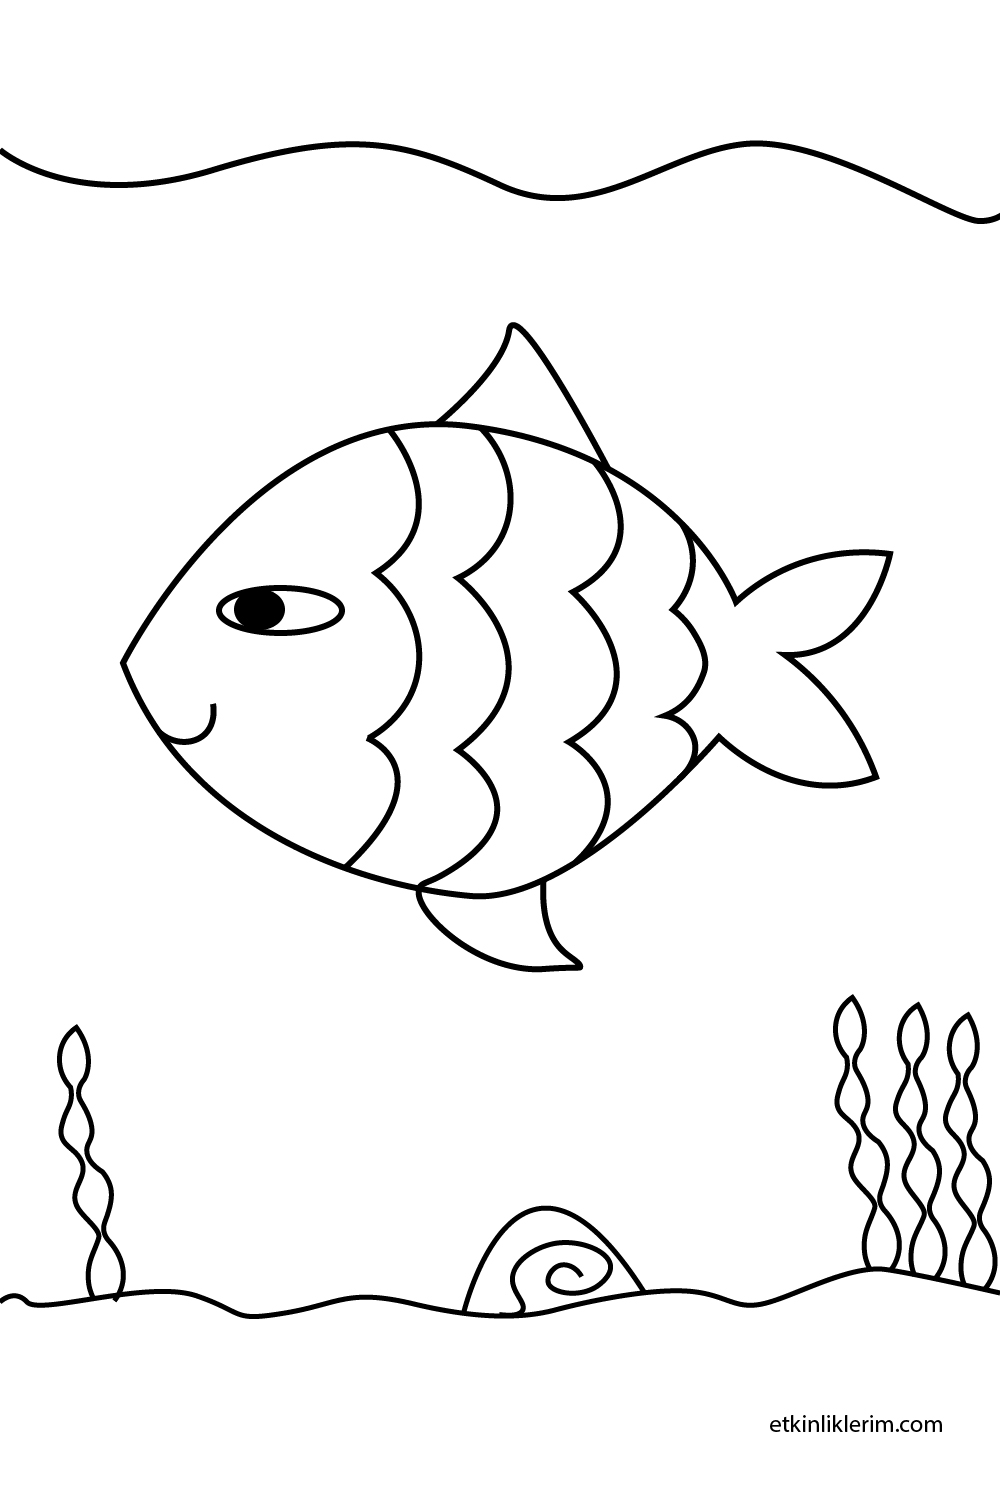 okul öncesi balık resmi boyama sayfaları, anasınıfı resim balık boyama